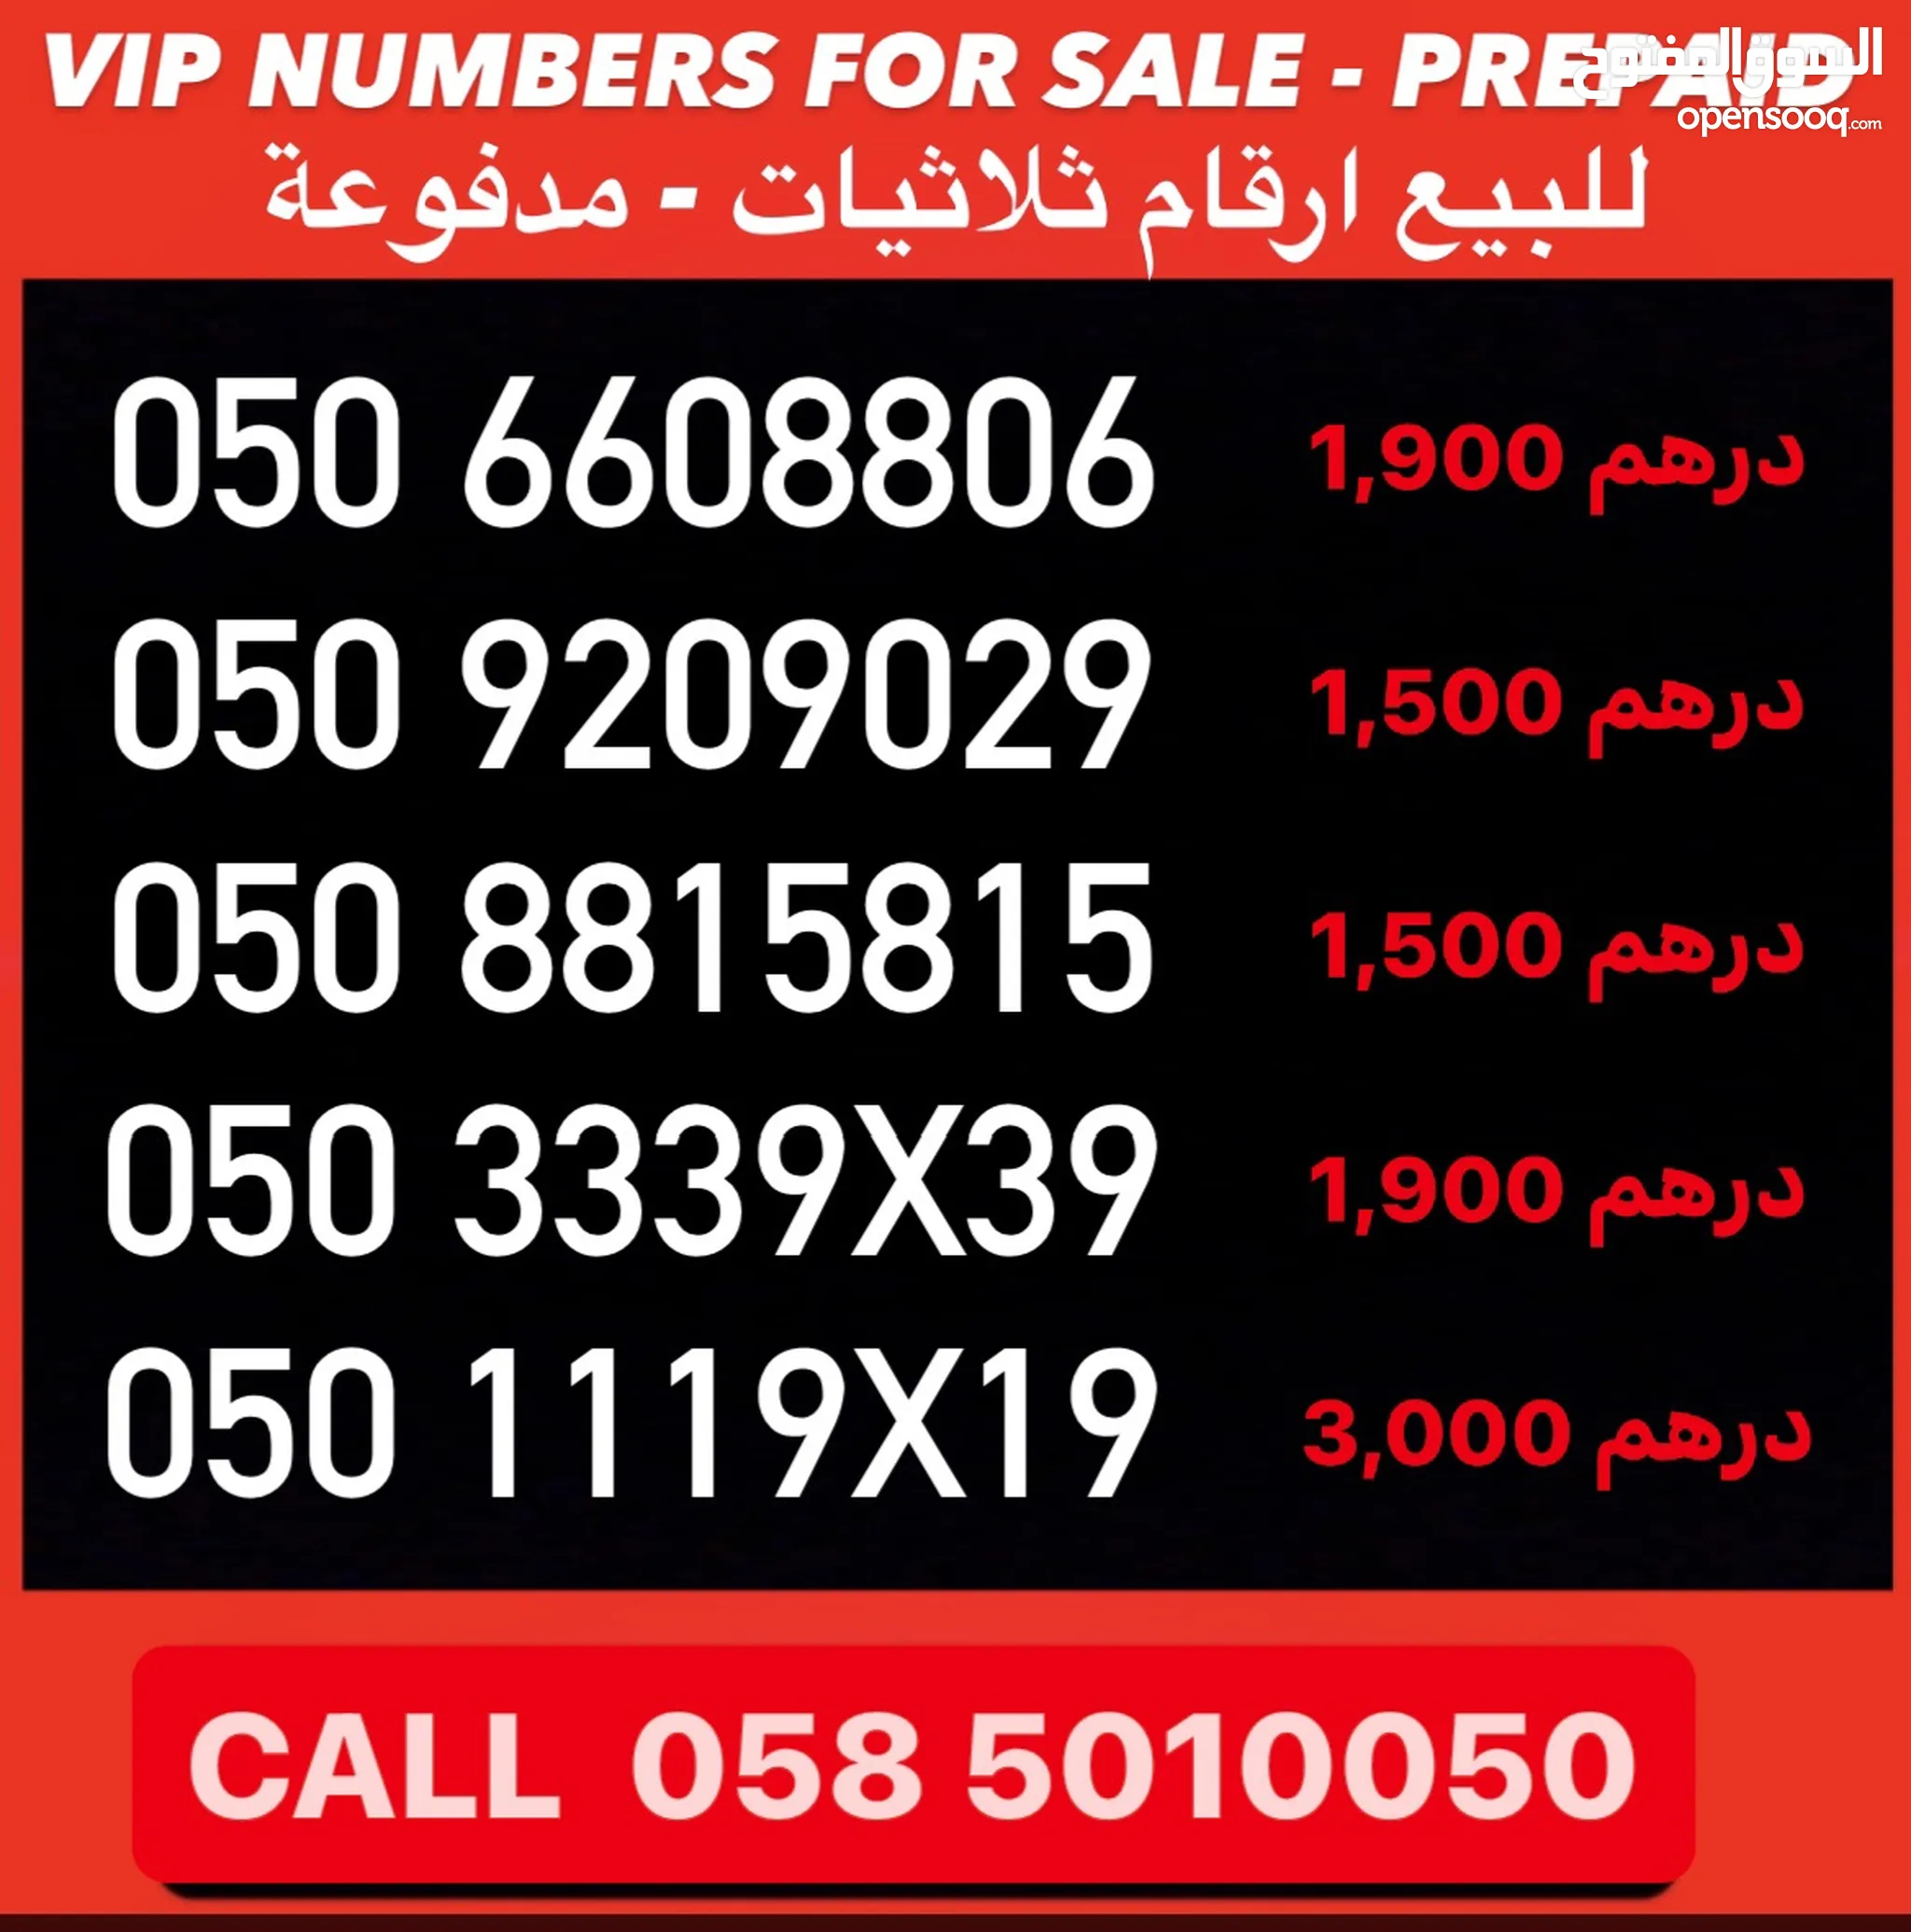 ارقام مميزة للهواتف : ارقام مميزة اتصالات : VIP : ارقام دو : ارخص الأسعار  في الإمارات | السوق المفتوح